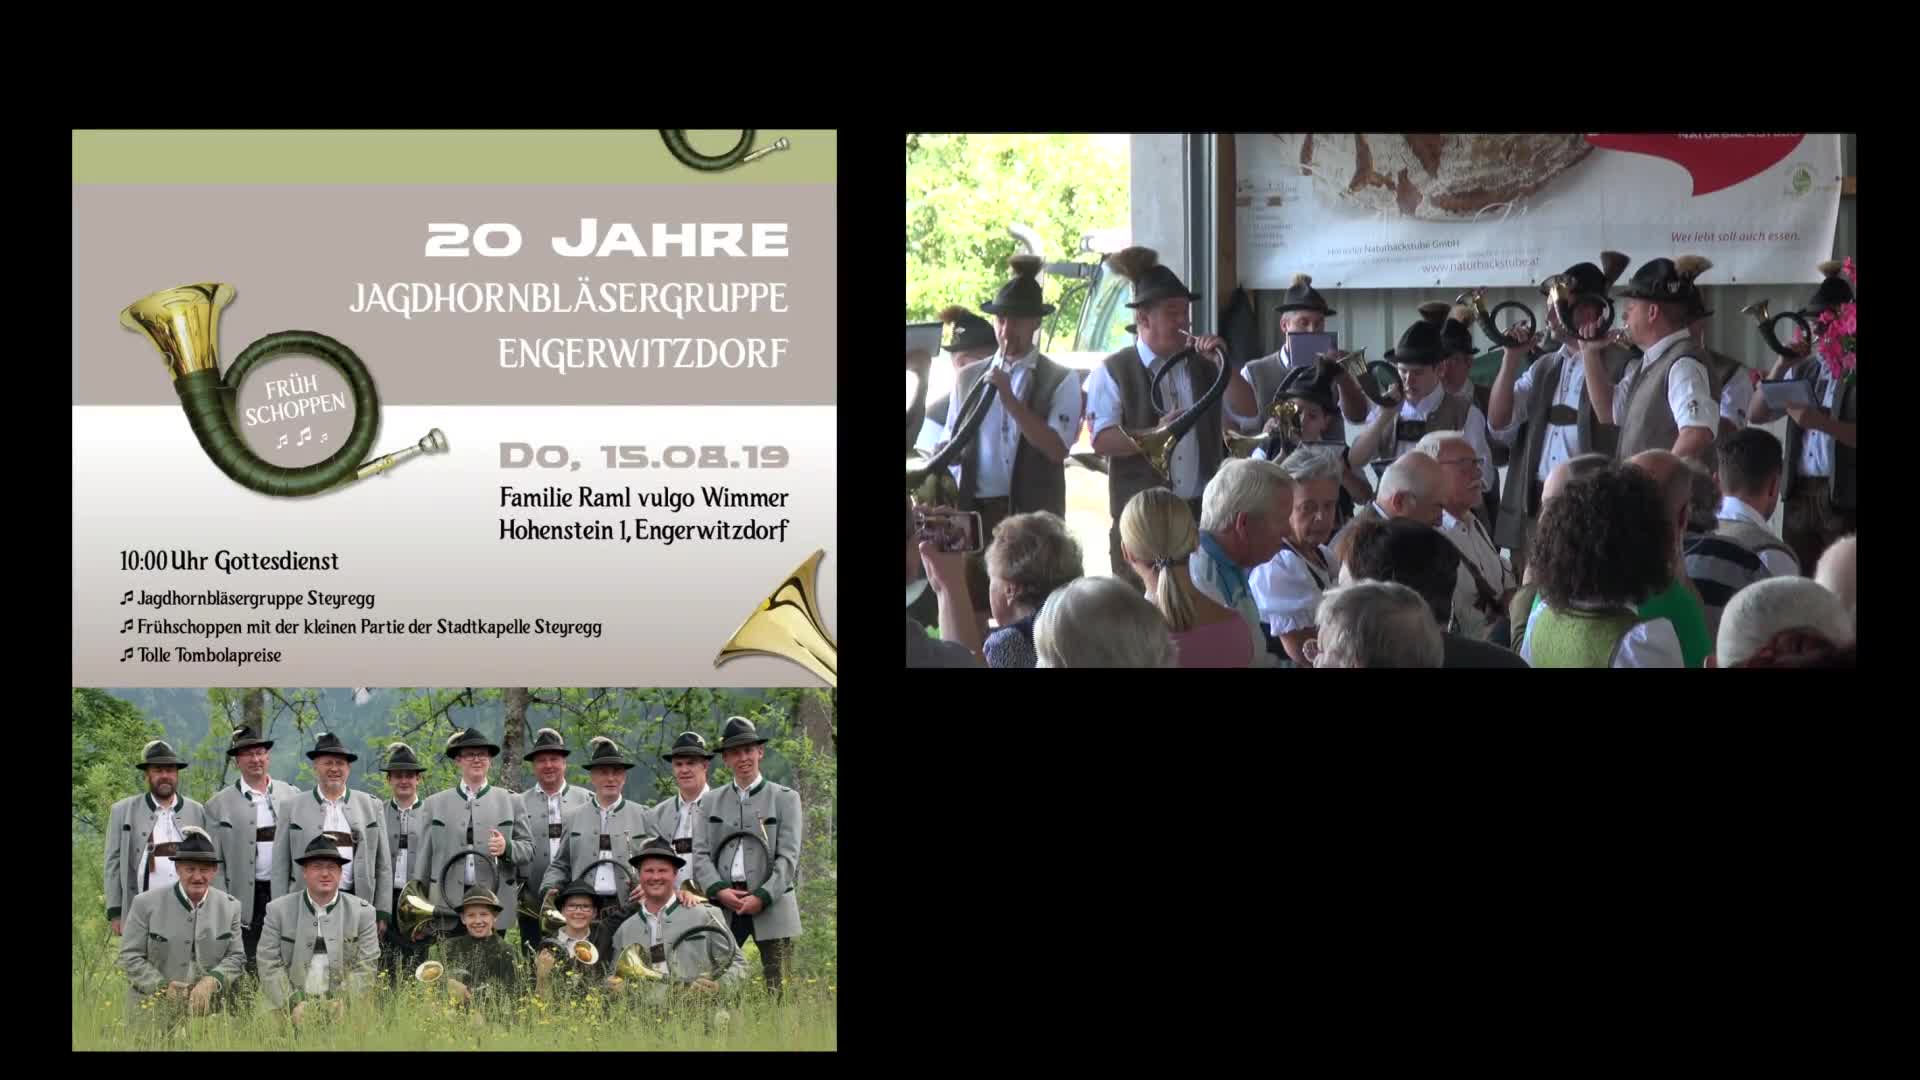 20 Jahre Jagdhornbläsergruppe Engerwitzdorf 